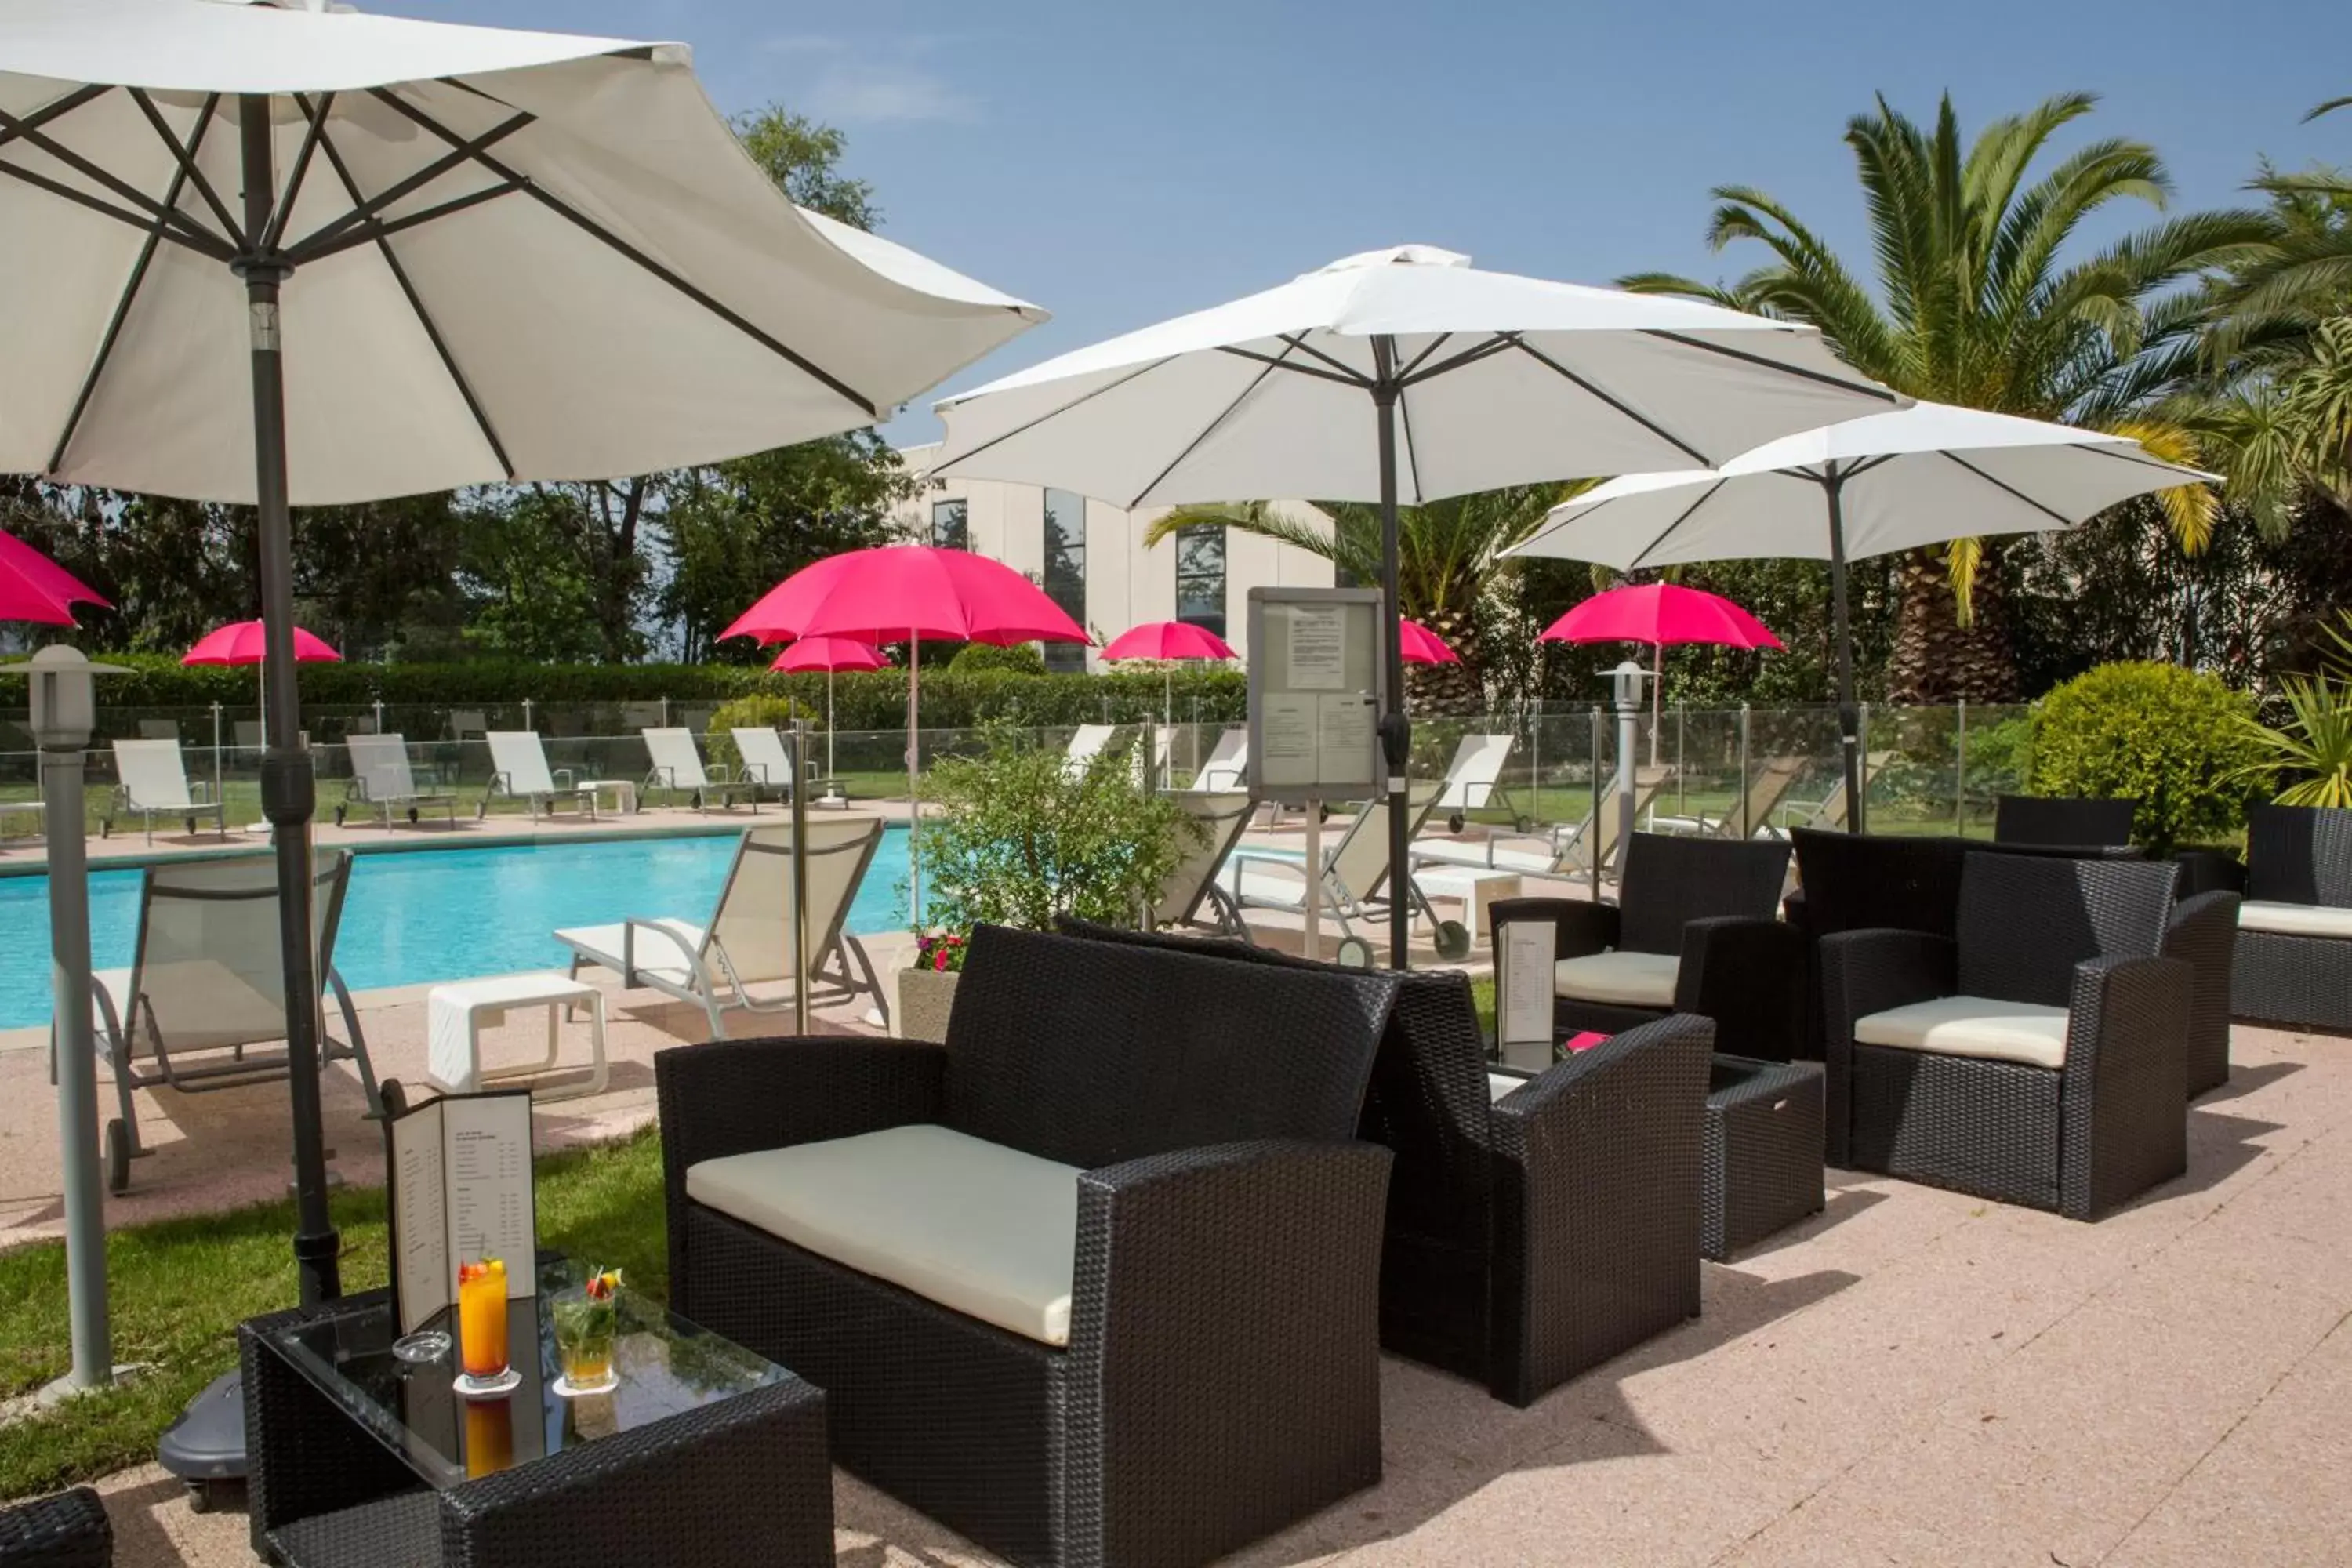 Balcony/Terrace, Swimming Pool in Mercure Cannes Mandelieu